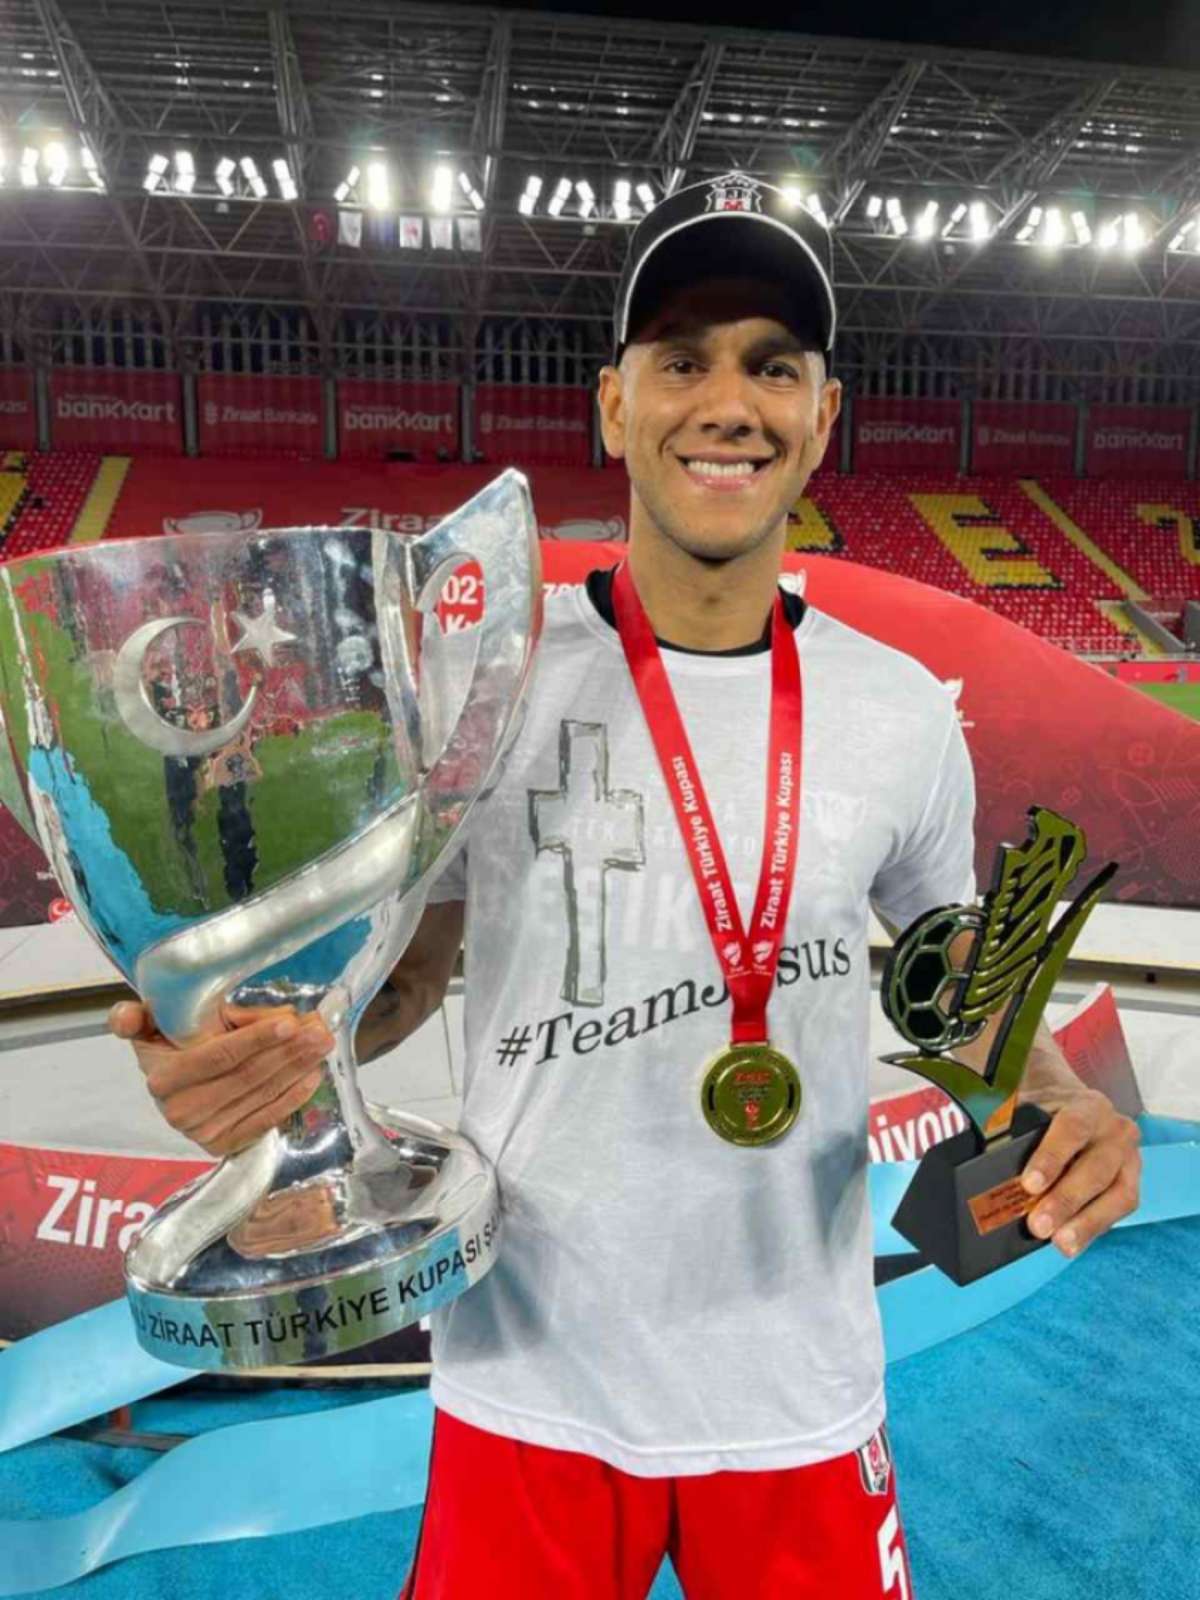 Jogador do Besiktas da Turquia escolhe São João da Boa Vista para montar  equipe de futebol profissional